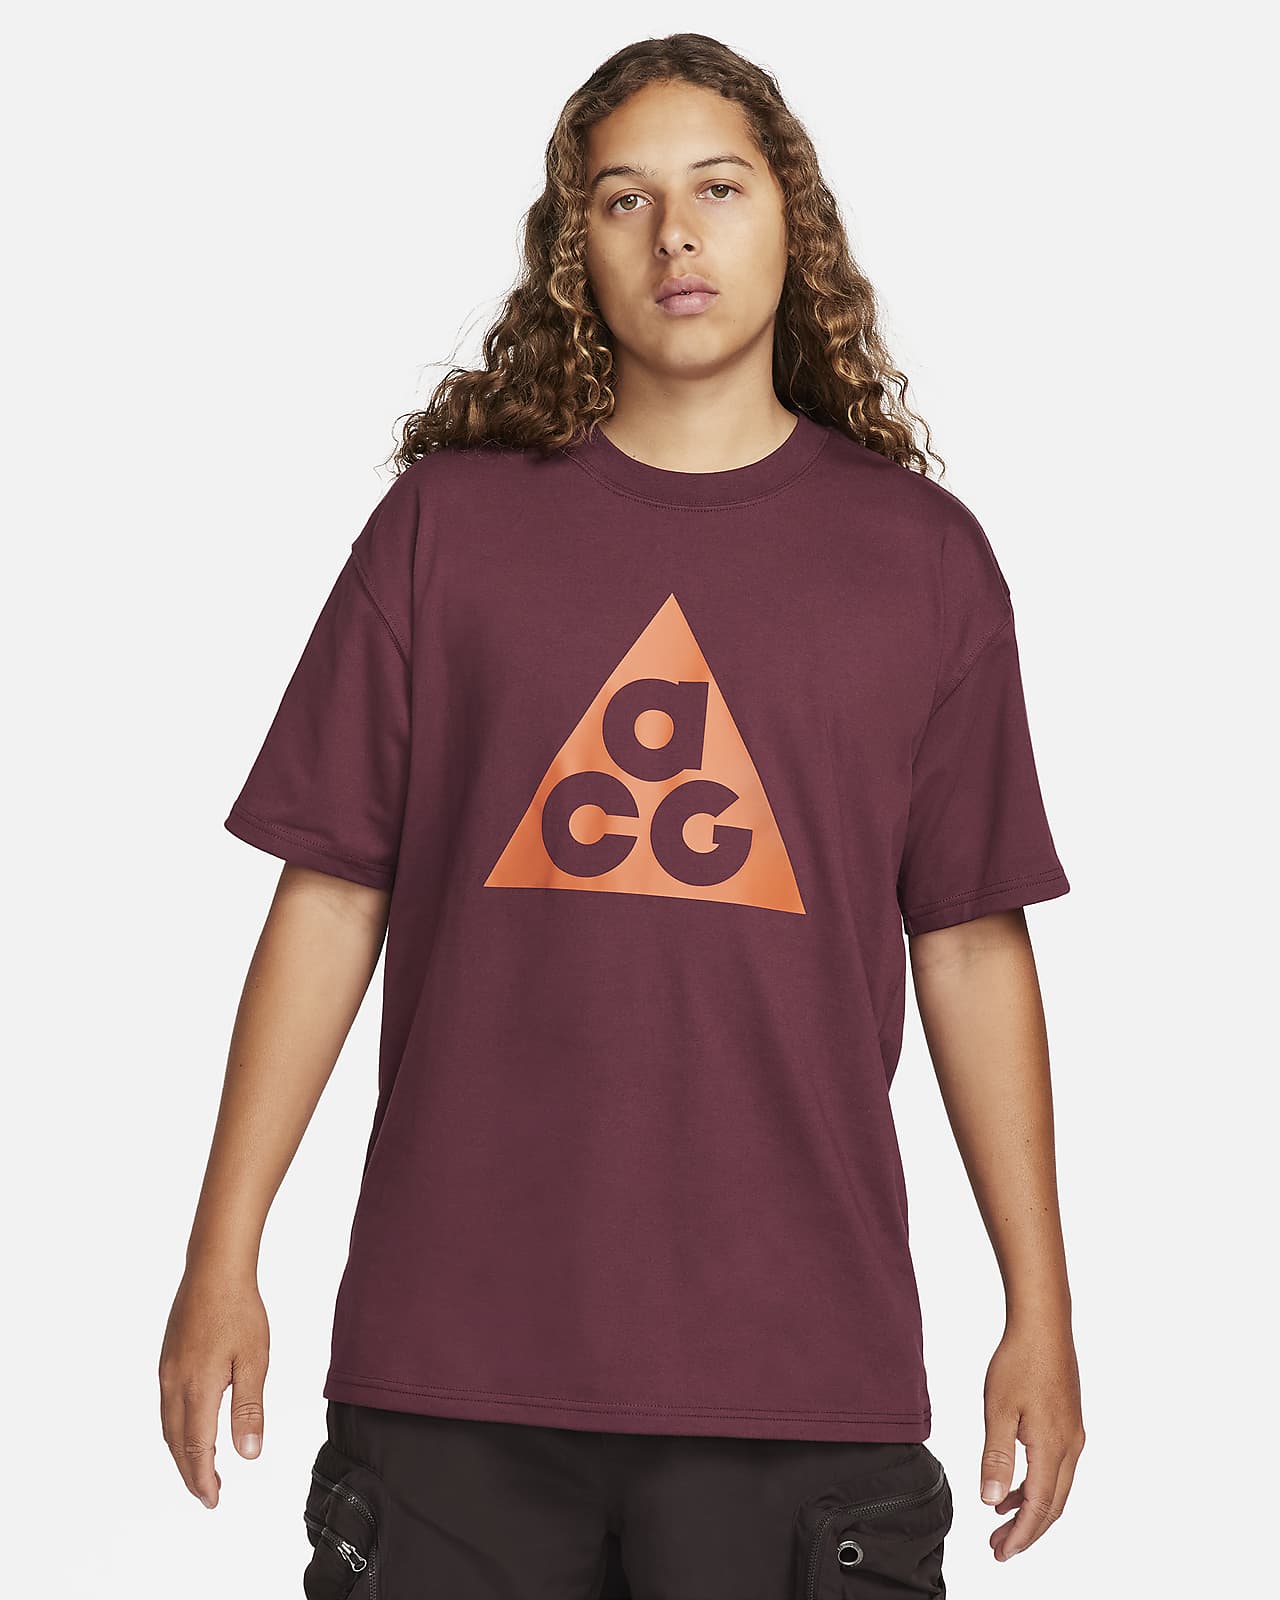 Tee-shirt à manches courtes Nike ACG pour Homme